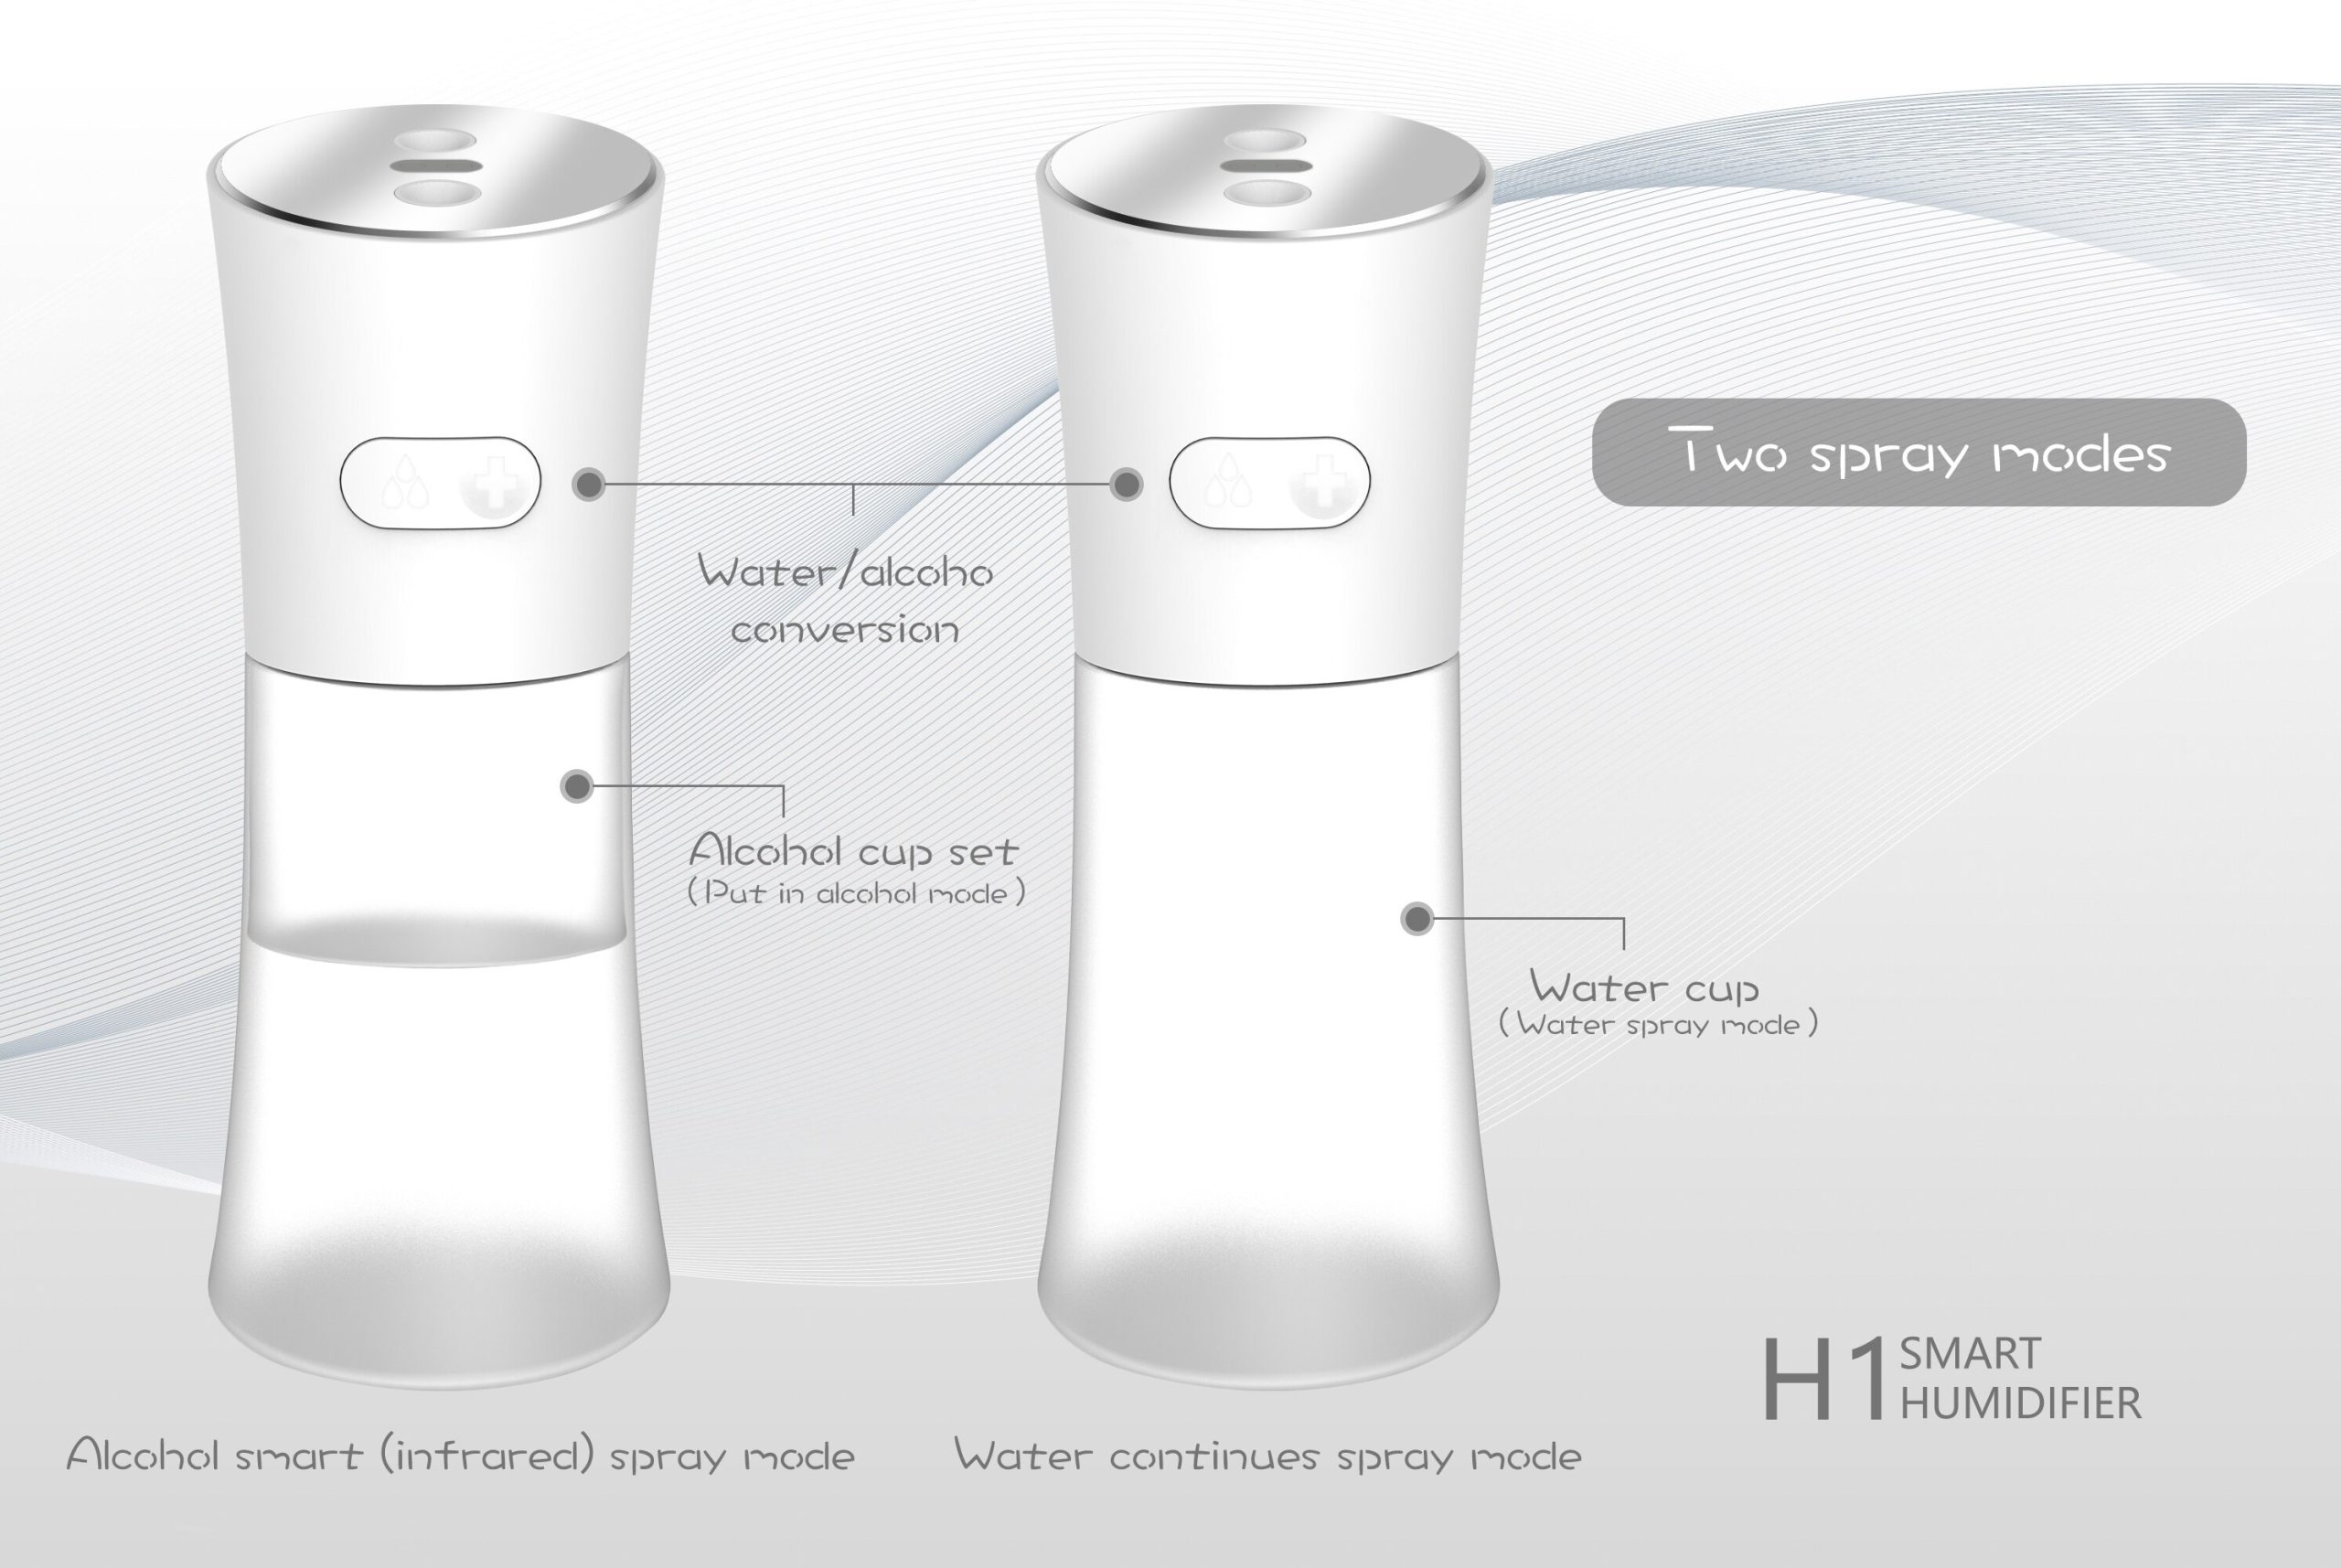 H1 intelligens, USB-ről tölthető aroma diffúzor fehér színben – 5V (4)